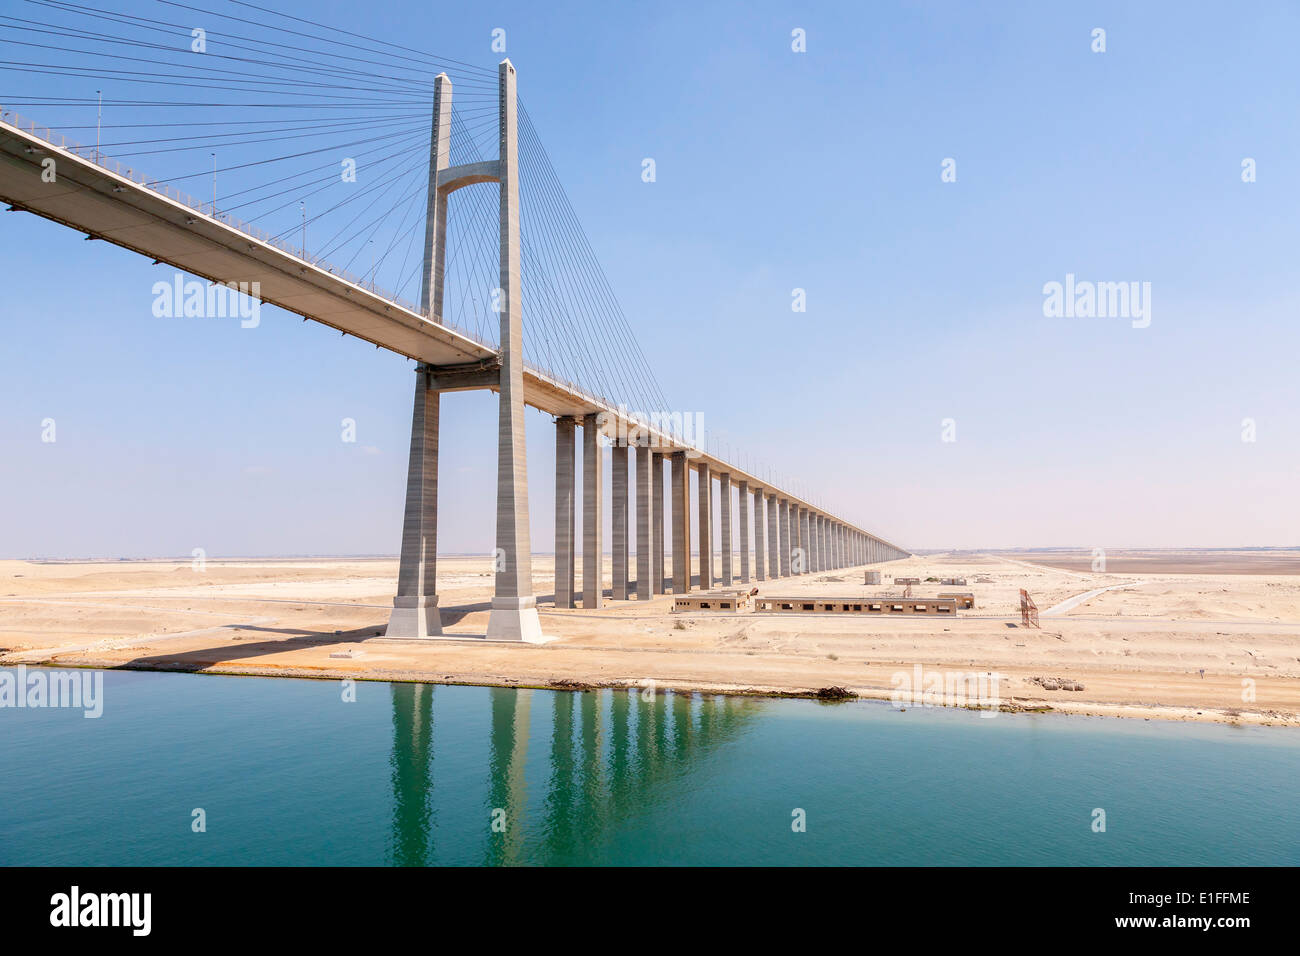 Mubarak Peace Bridge, Suez Canal Egypt. Stock Photo